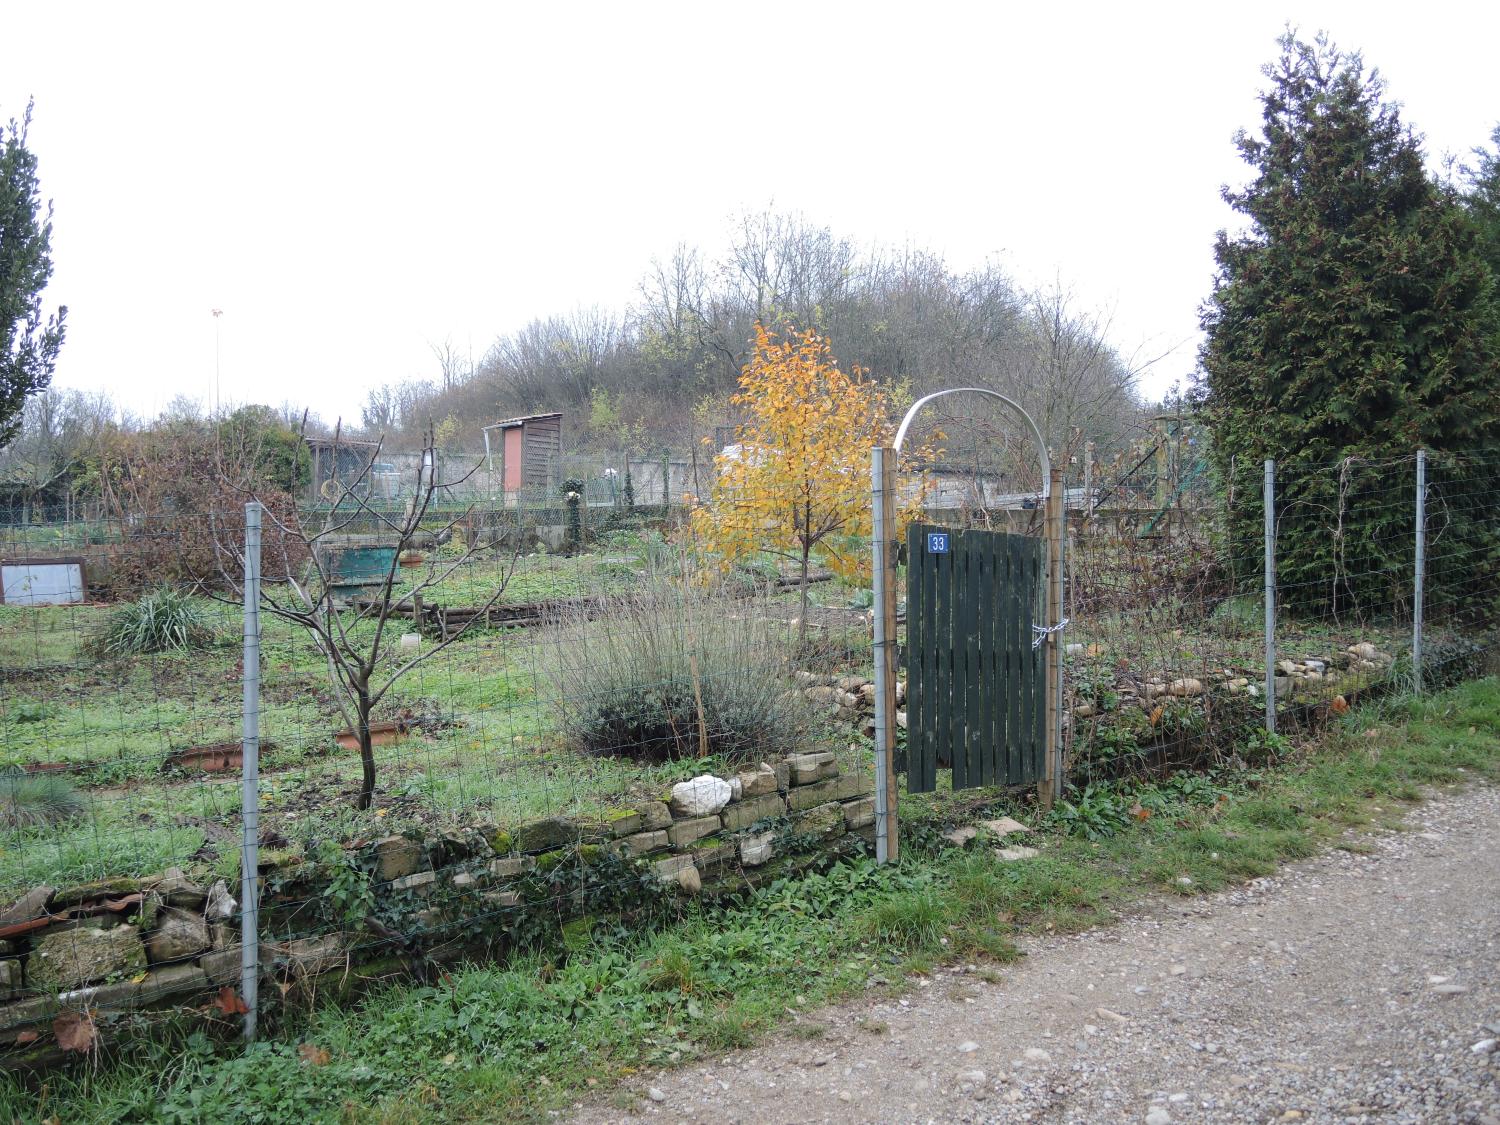 Jardins ouvriers dit familiaux de Saint-Foy-lès-Lyon